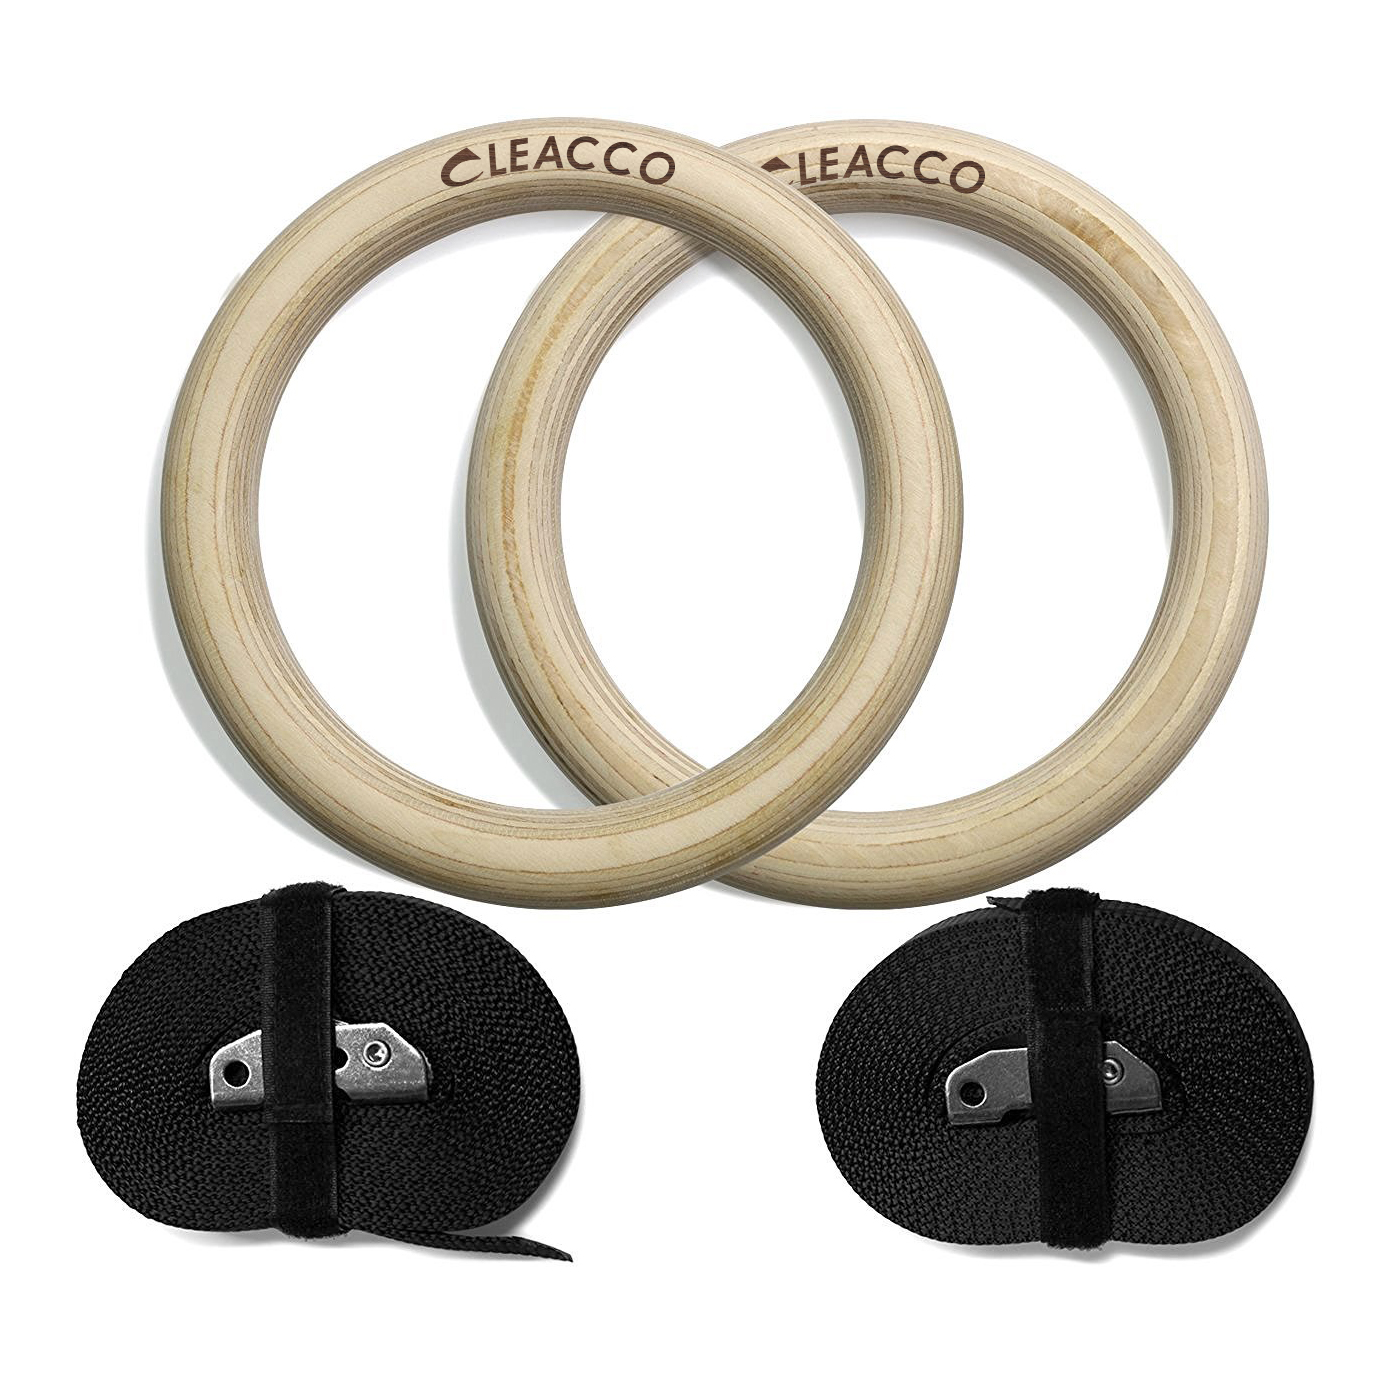 Vòng treo gỗ Gymnastic Rings Cleacco có vạch kẻ số , khóa cài thông minh tiện lợi , chắc chắn treo xà đơn , các bài tập dip rings , street workout , bảo hành 12 tháng - BORO SPORT